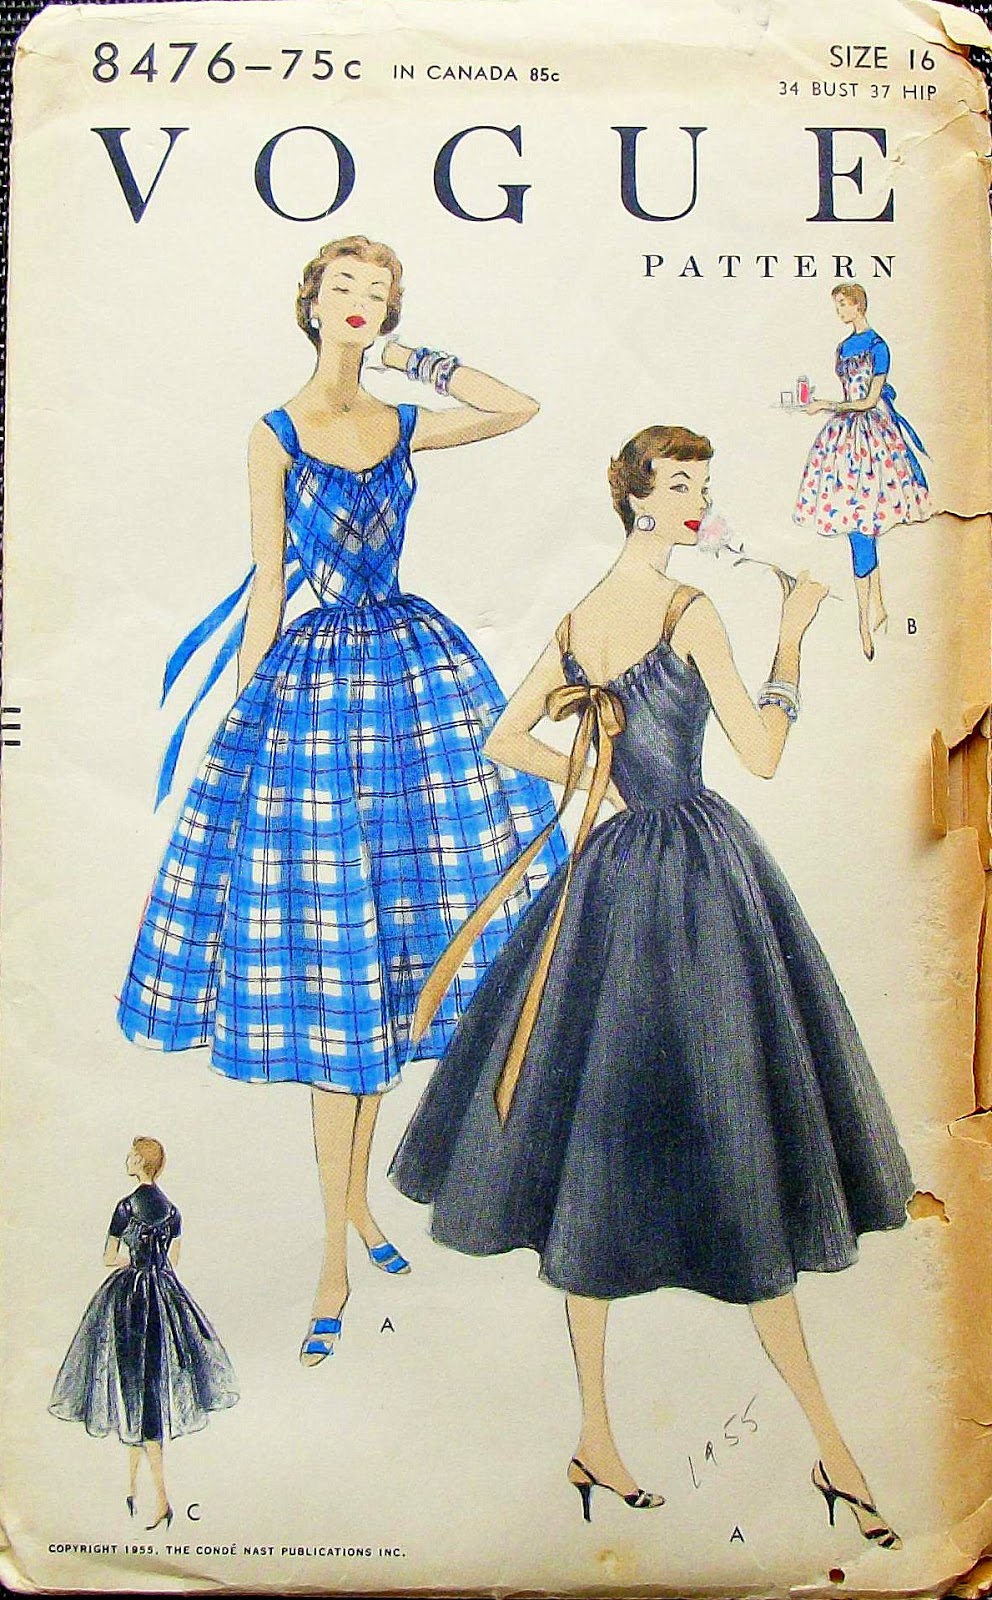 Sartista Un Abito Di Luisa Beccaria Con Il Cartamodello Vogue Pattern 8476 Del 1955